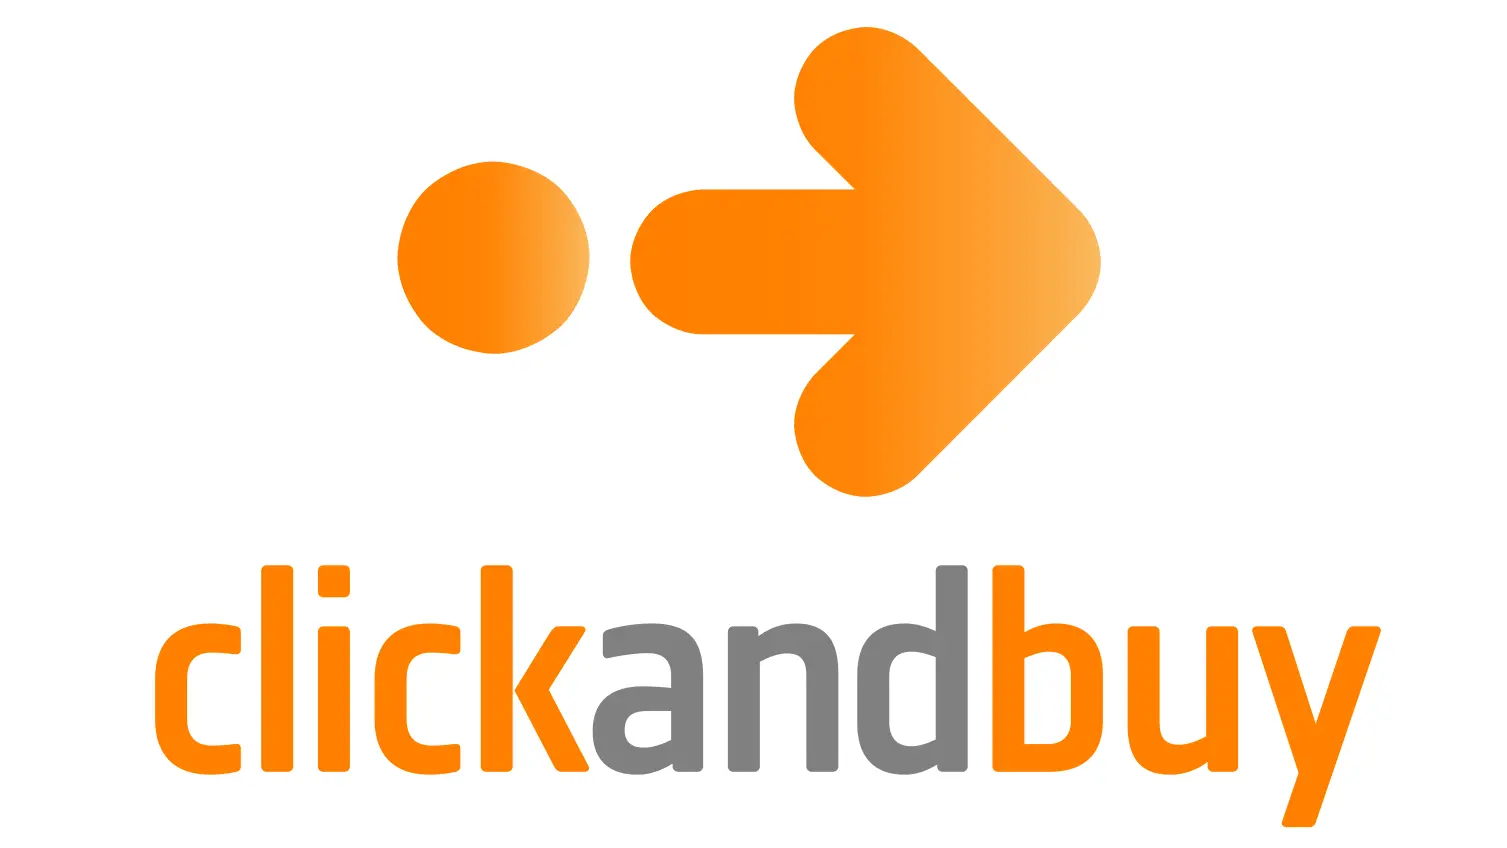 clickandbuy logo